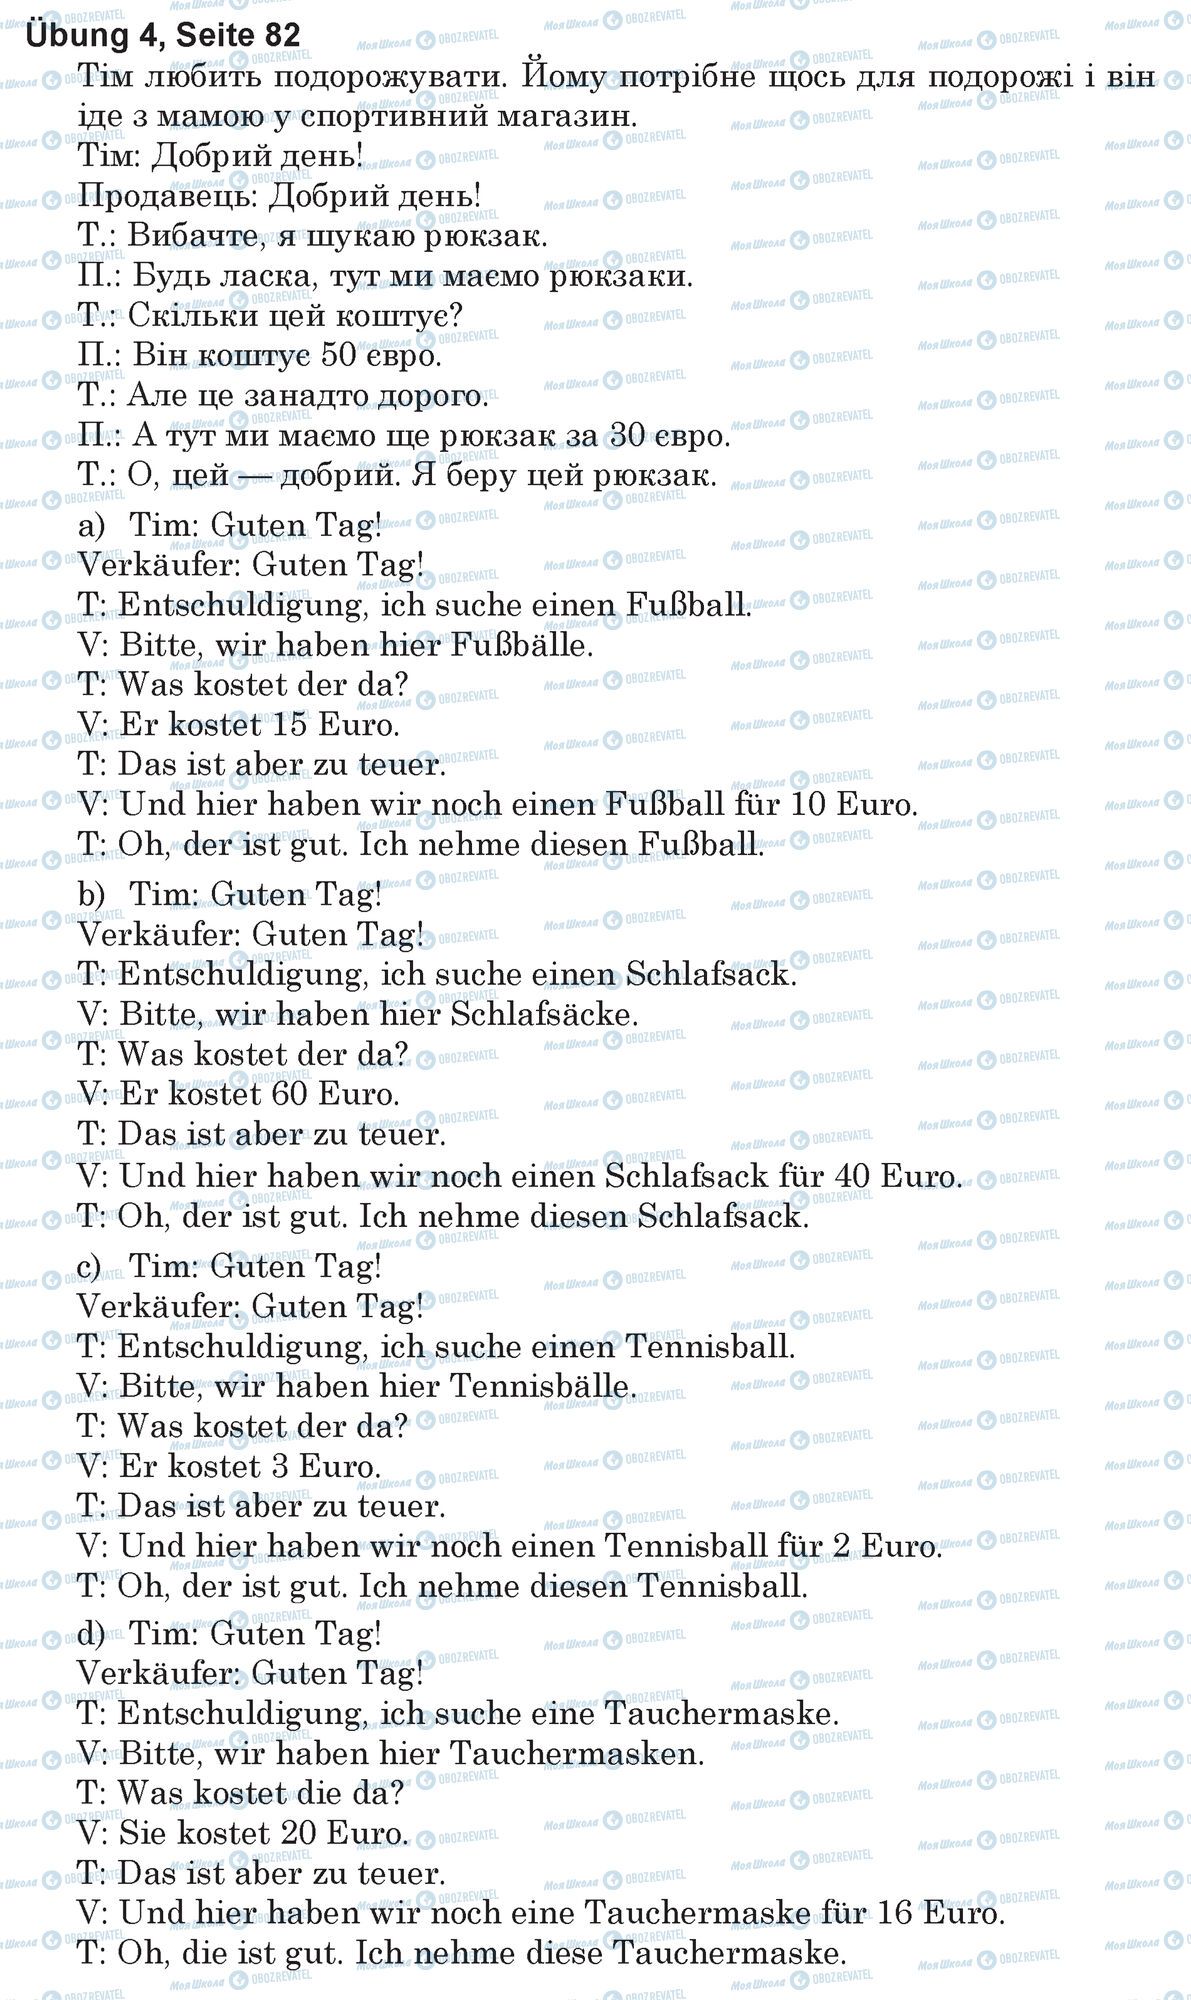 ГДЗ Німецька мова 5 клас сторінка Ubung 4, Seite 82